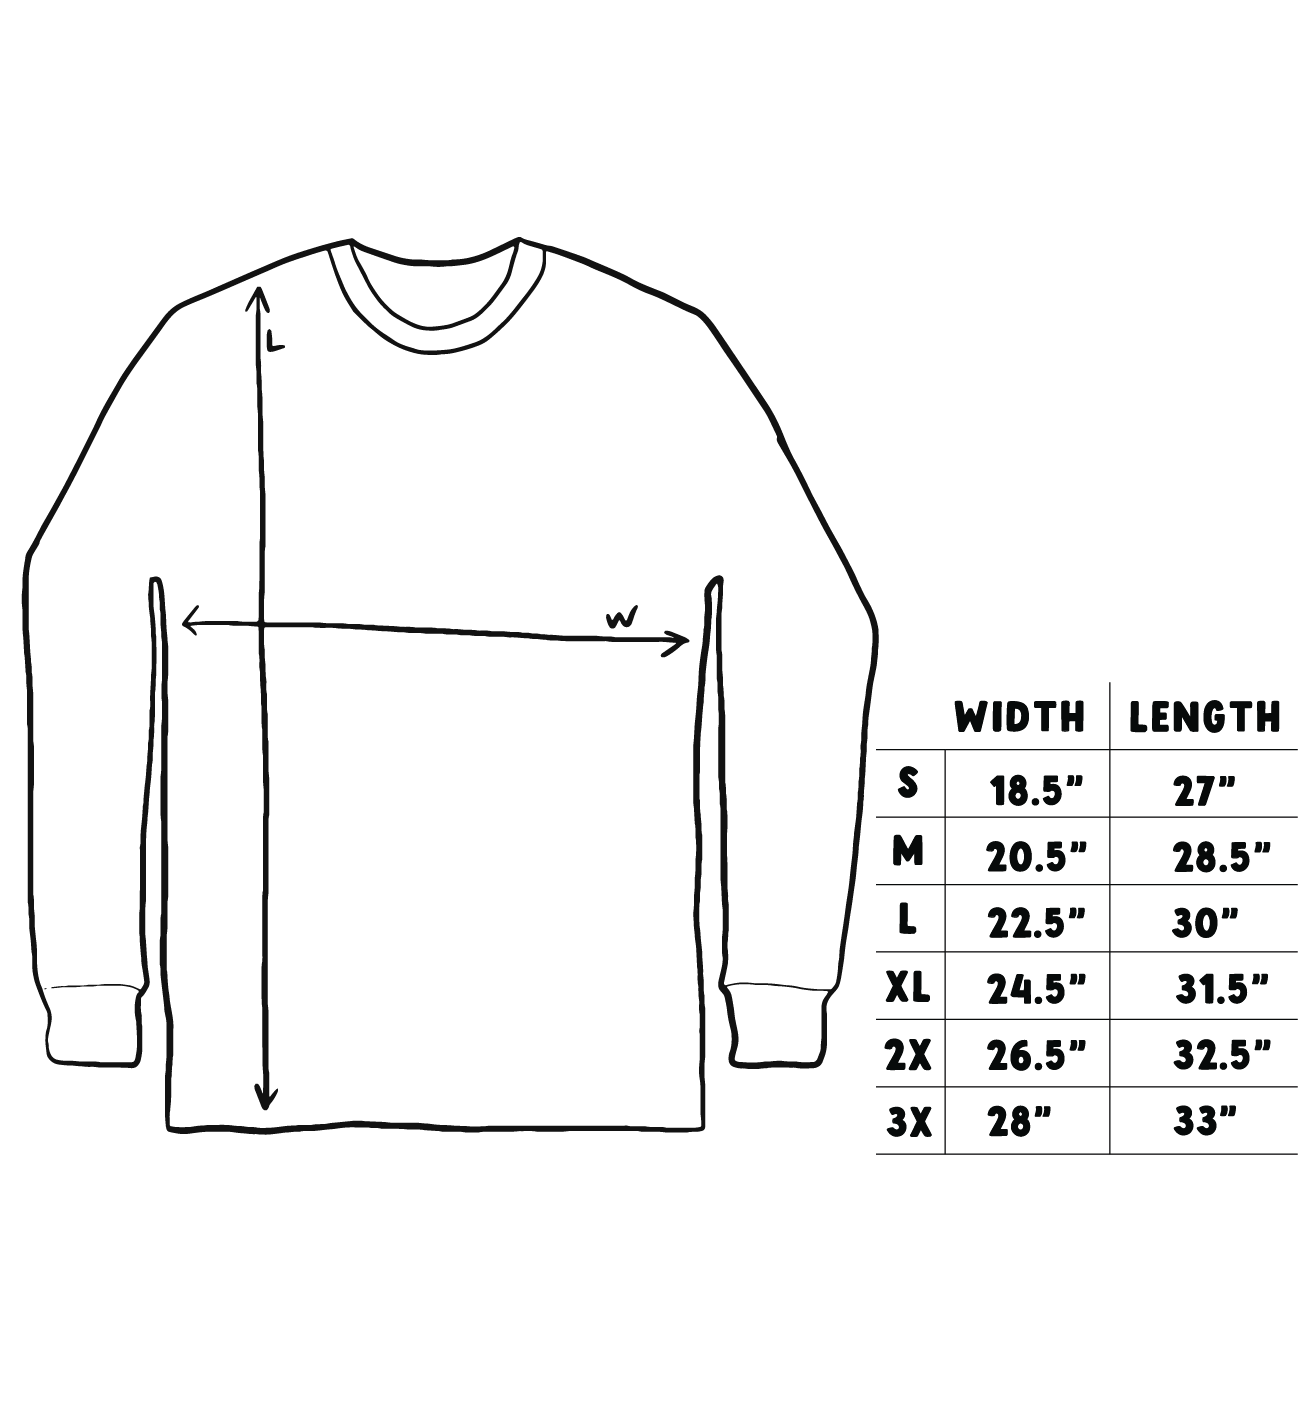 COEXIST Long Sleeve w/woven label